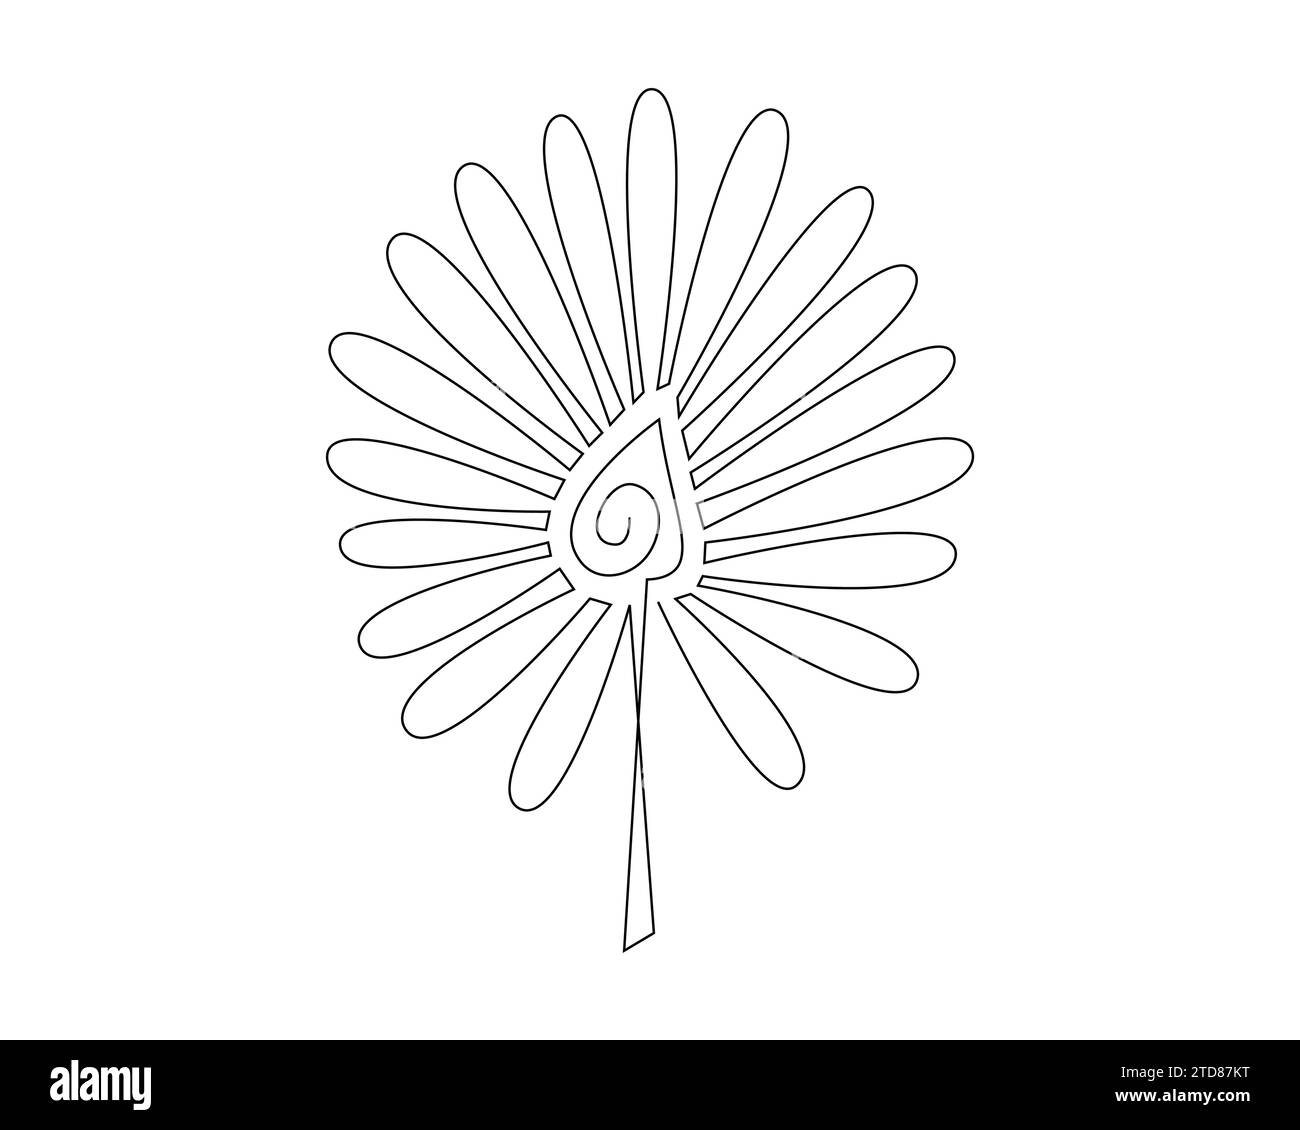 Continu un simple dessin de ligne abstraite simple d'une icône de fleur en silhouette sur un fond blanc. Linéaire stylisé. Illustration de Vecteur